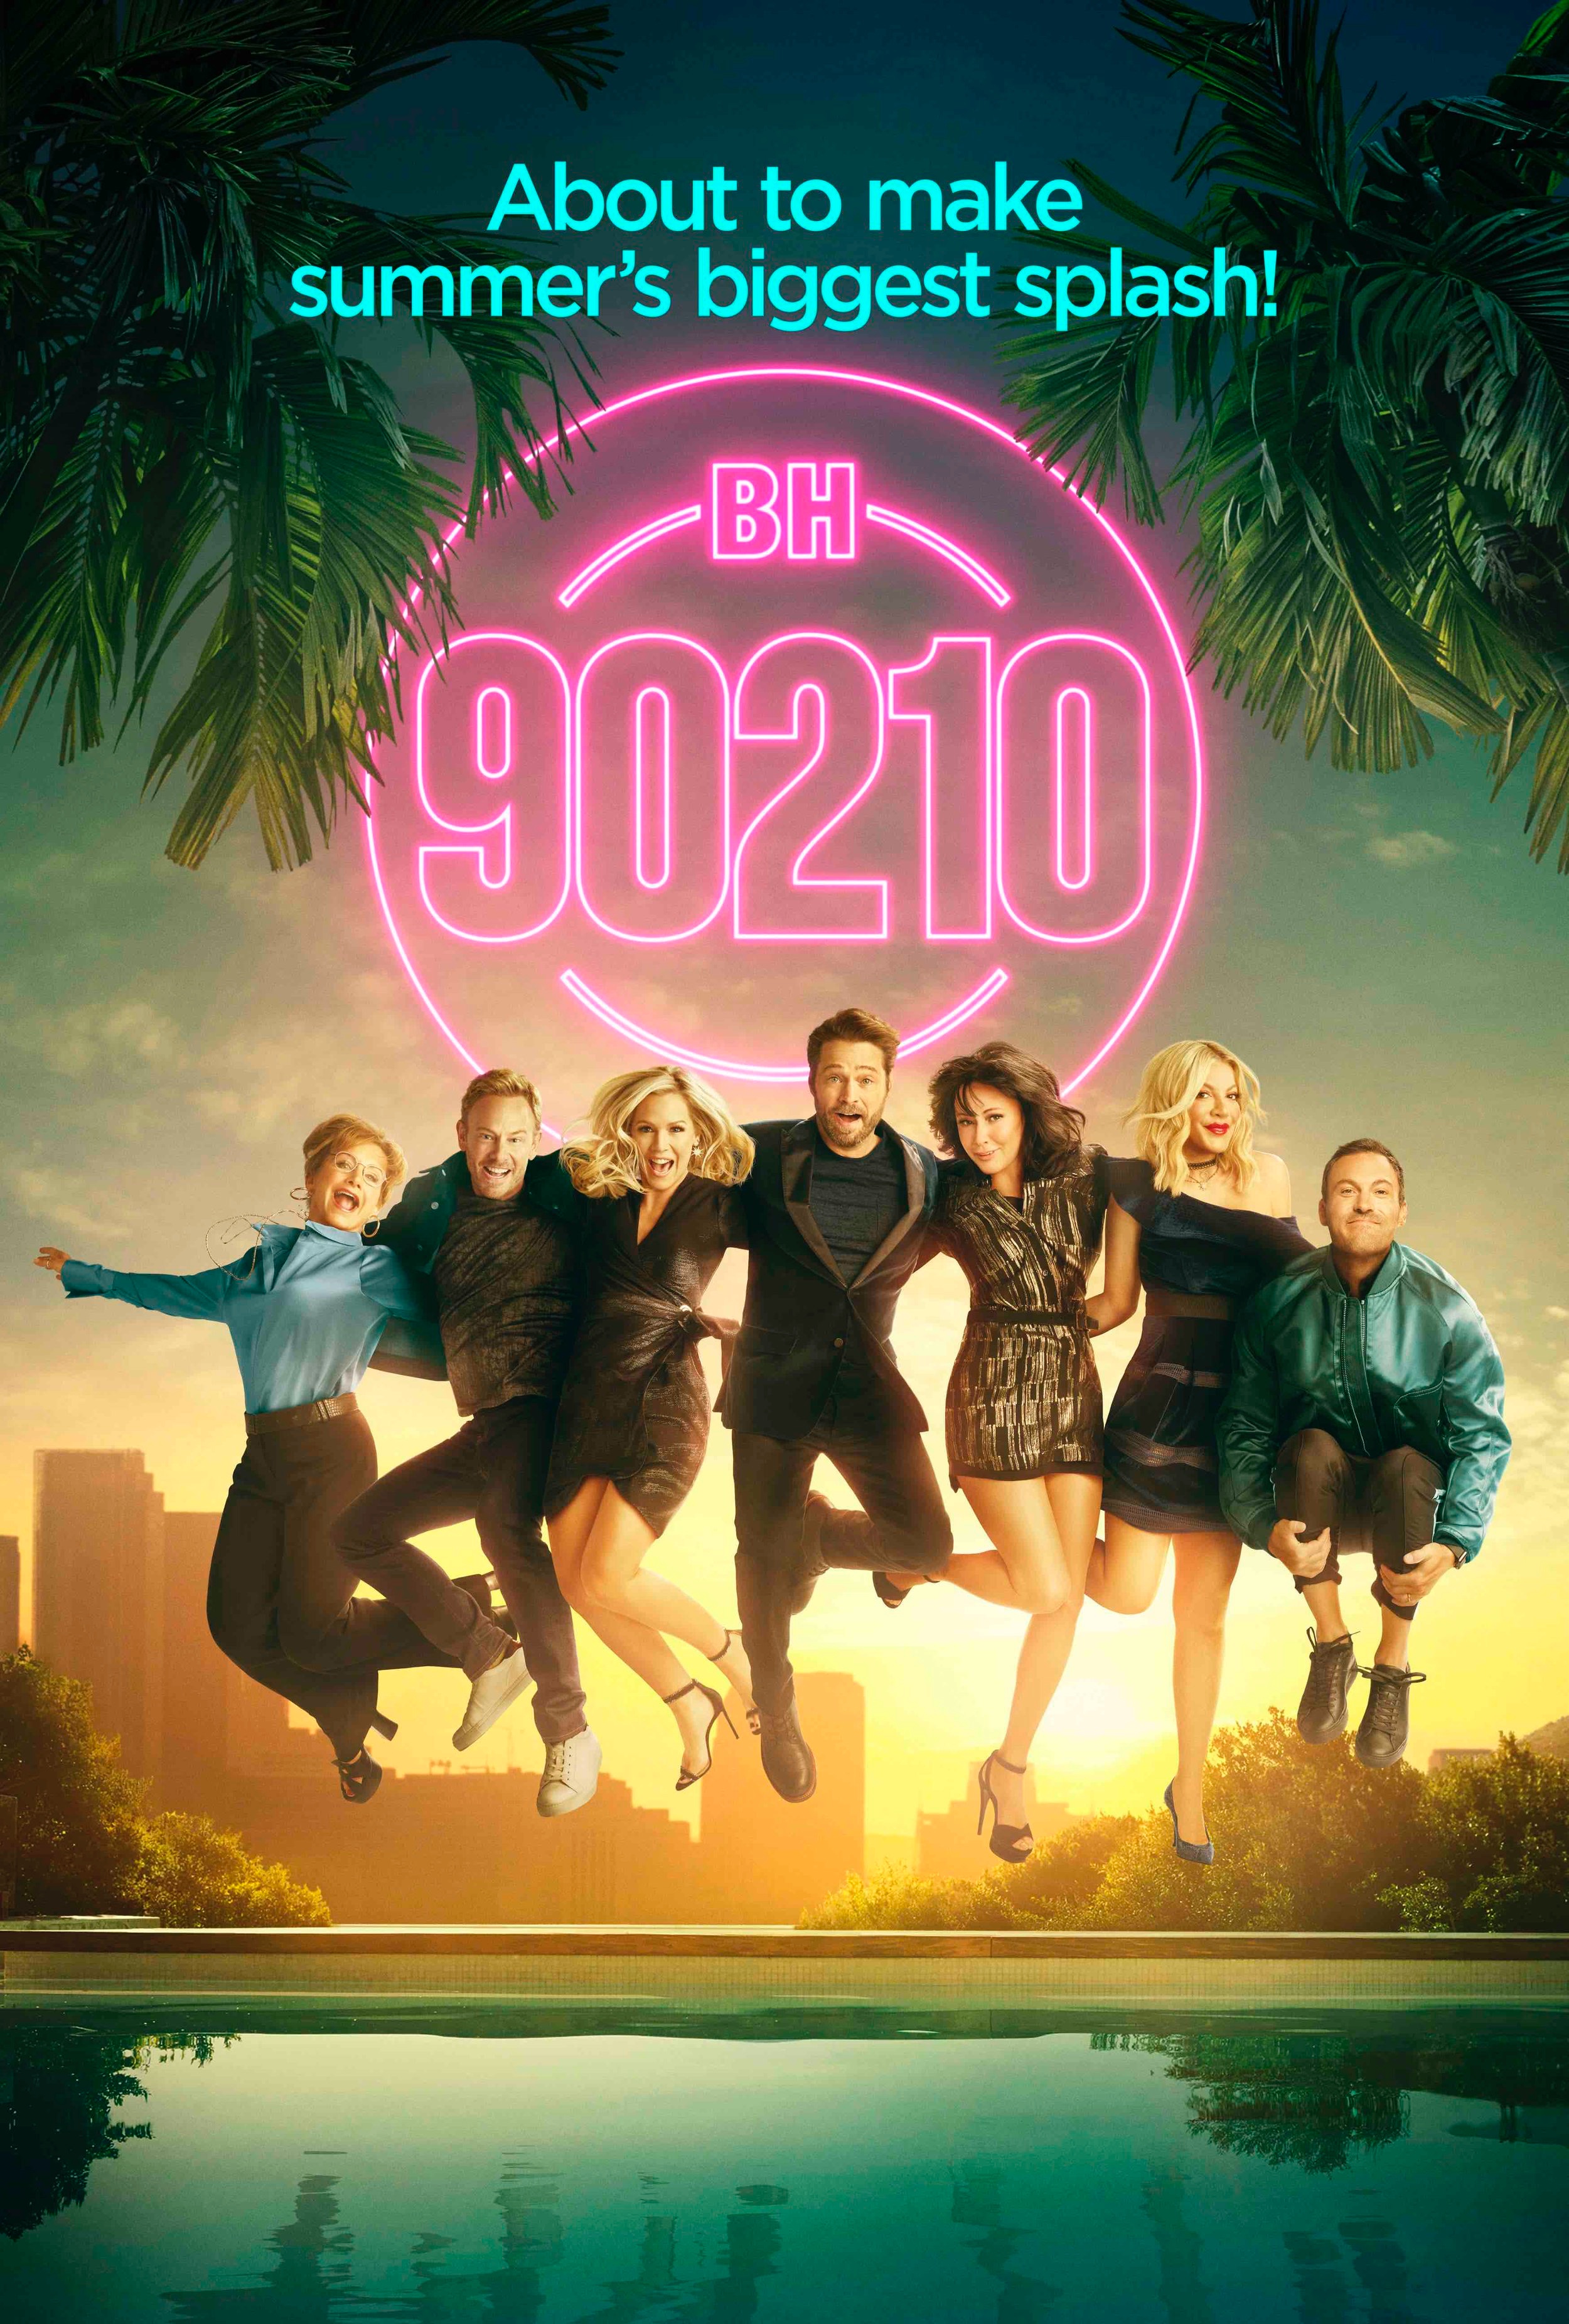 BH 90210